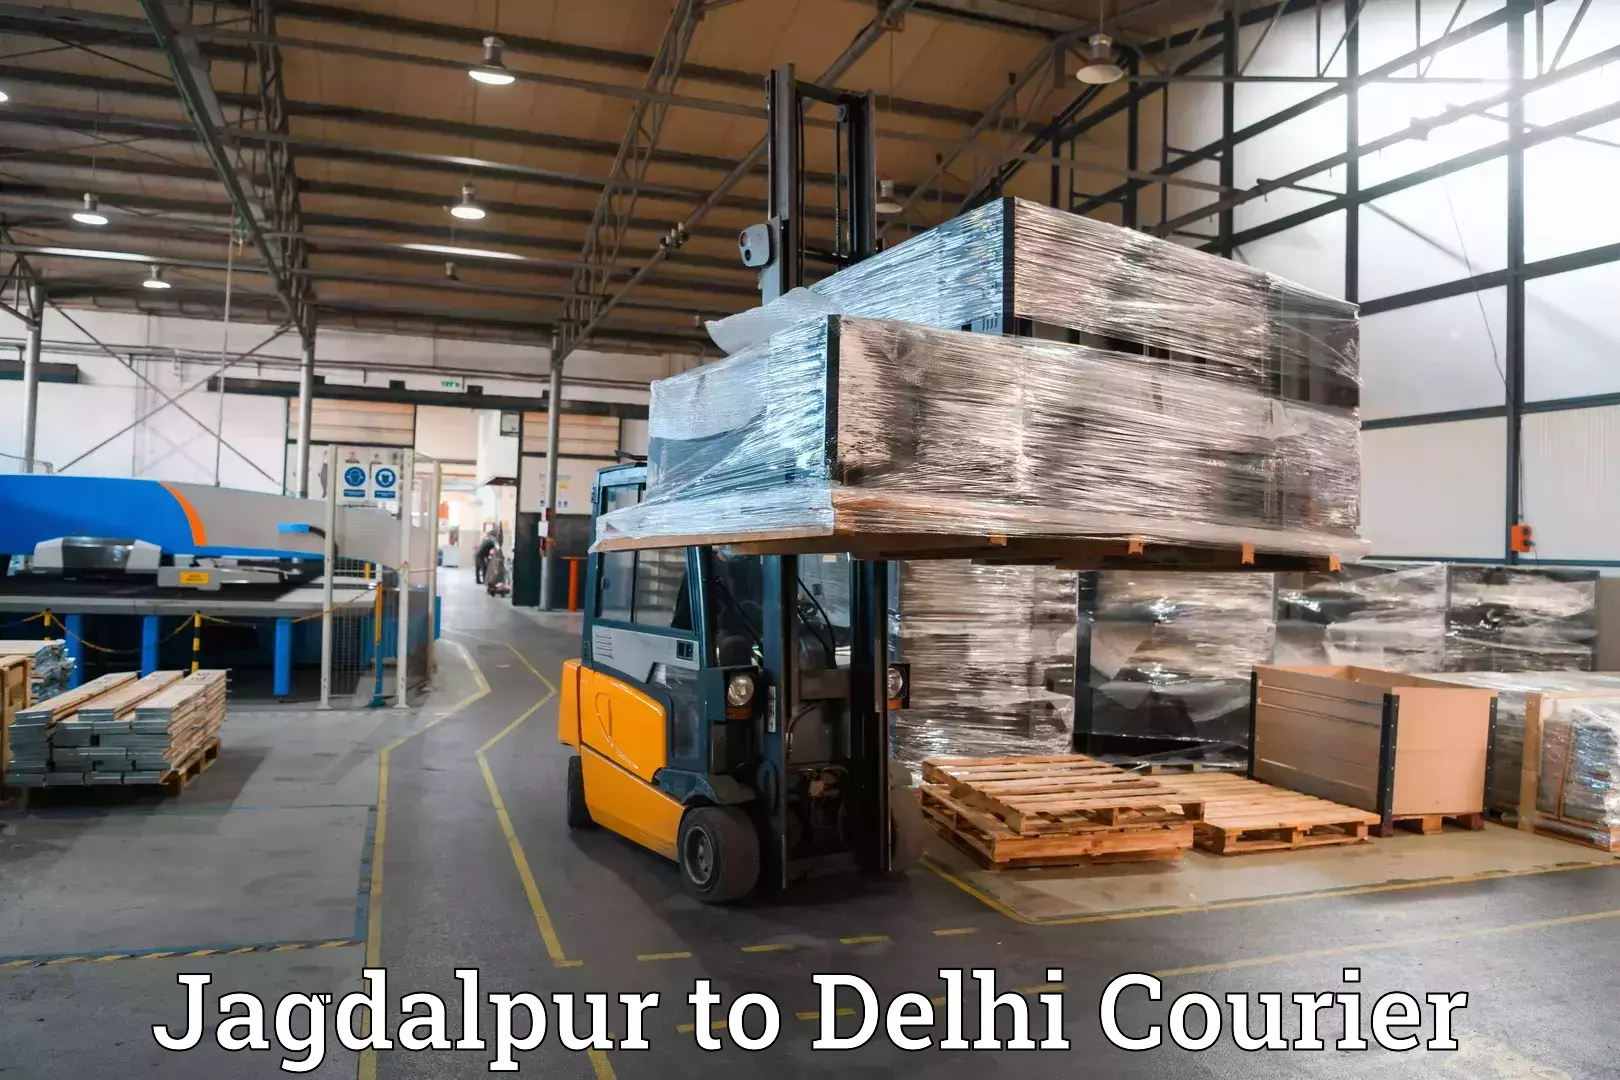 Baggage transport network Jagdalpur to Delhi Technological University DTU